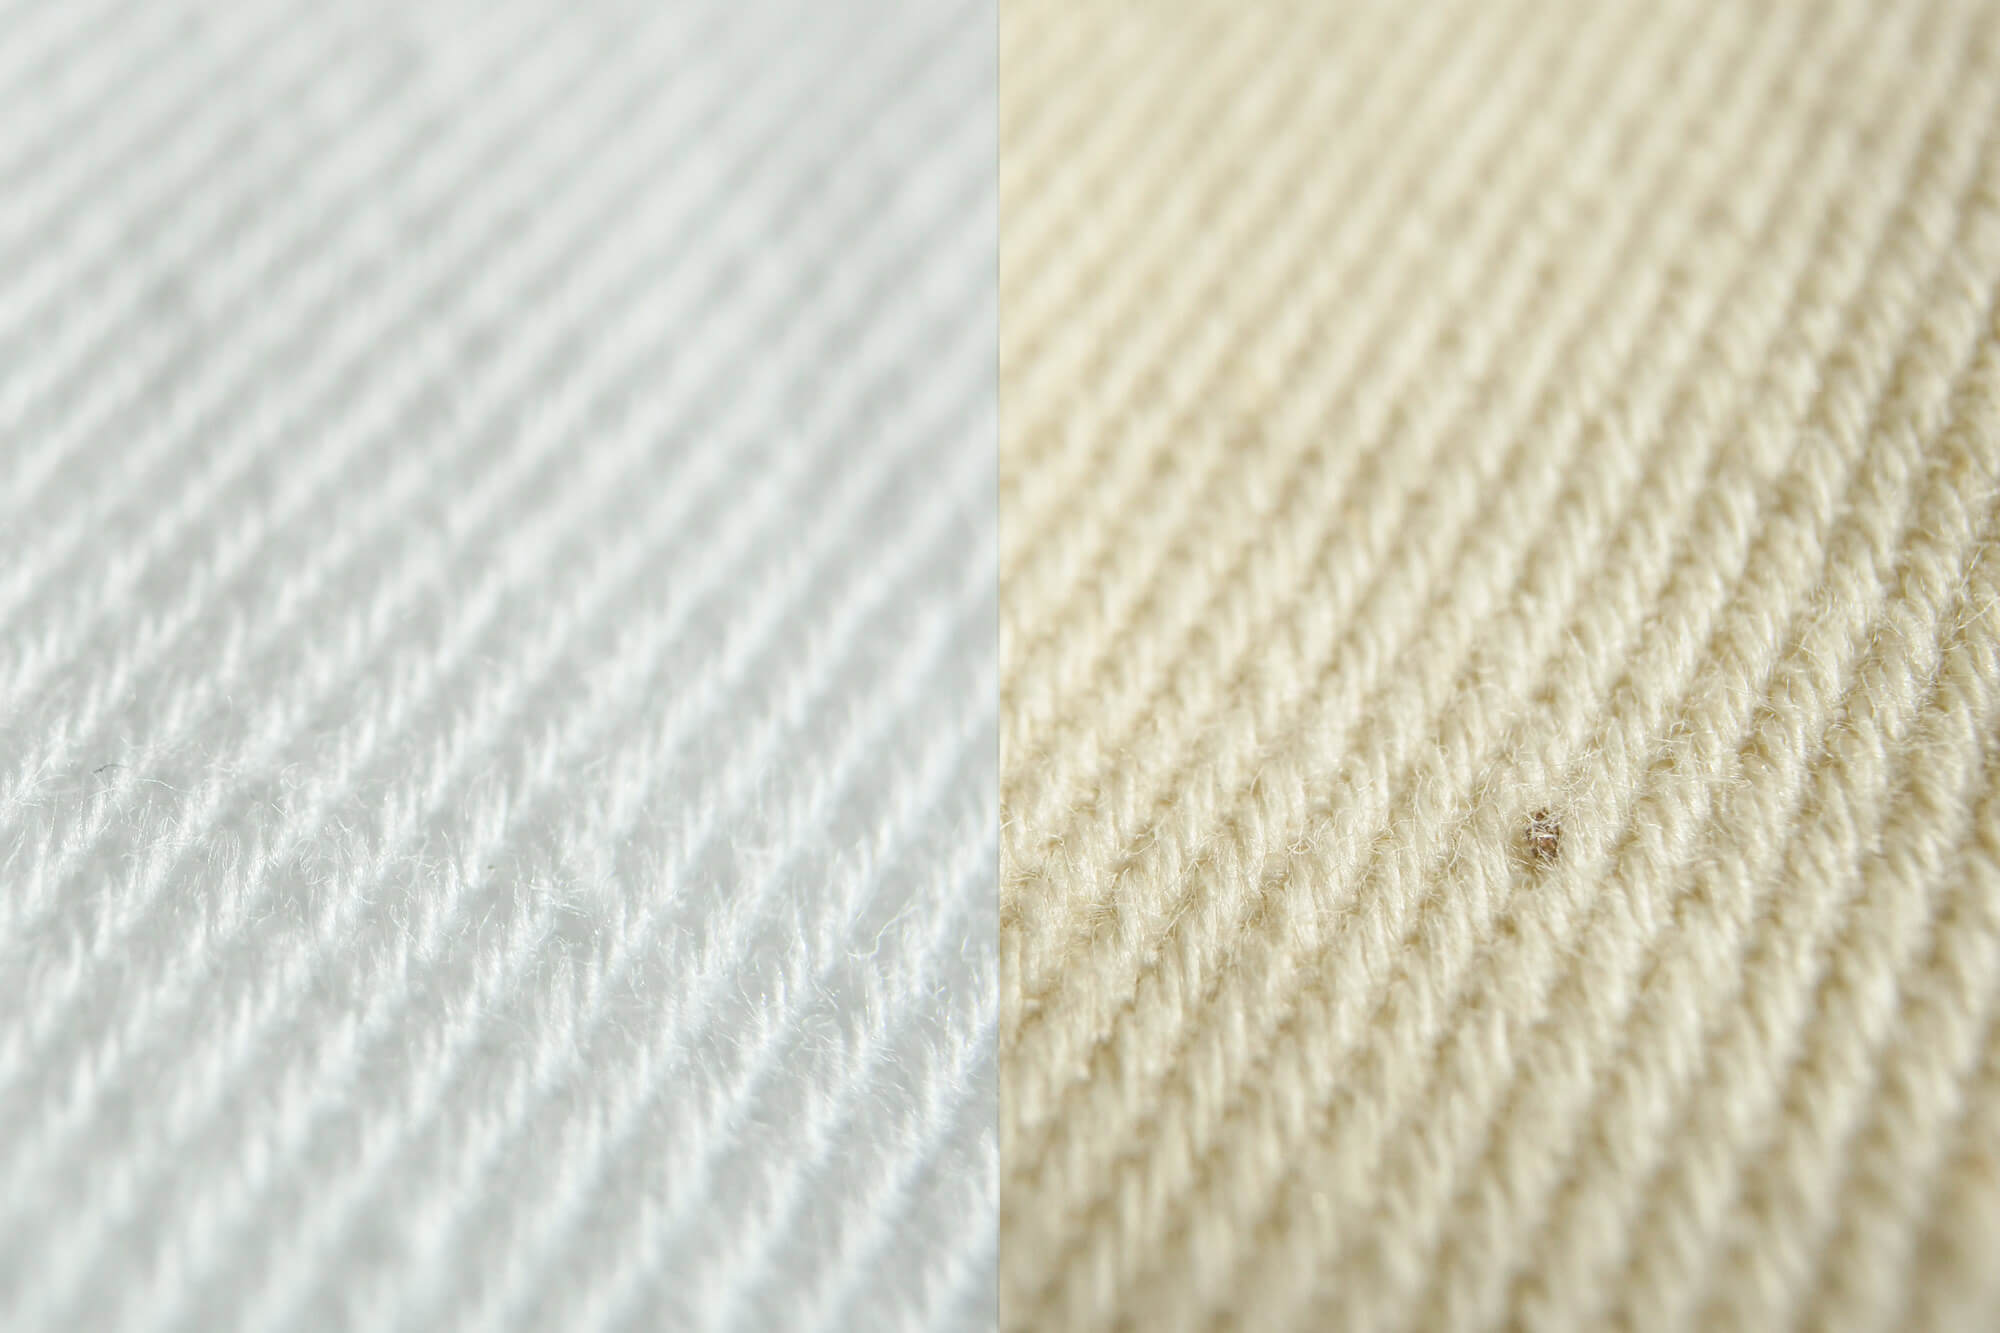 Comparaison d'un tissu blanchi et non blanchi